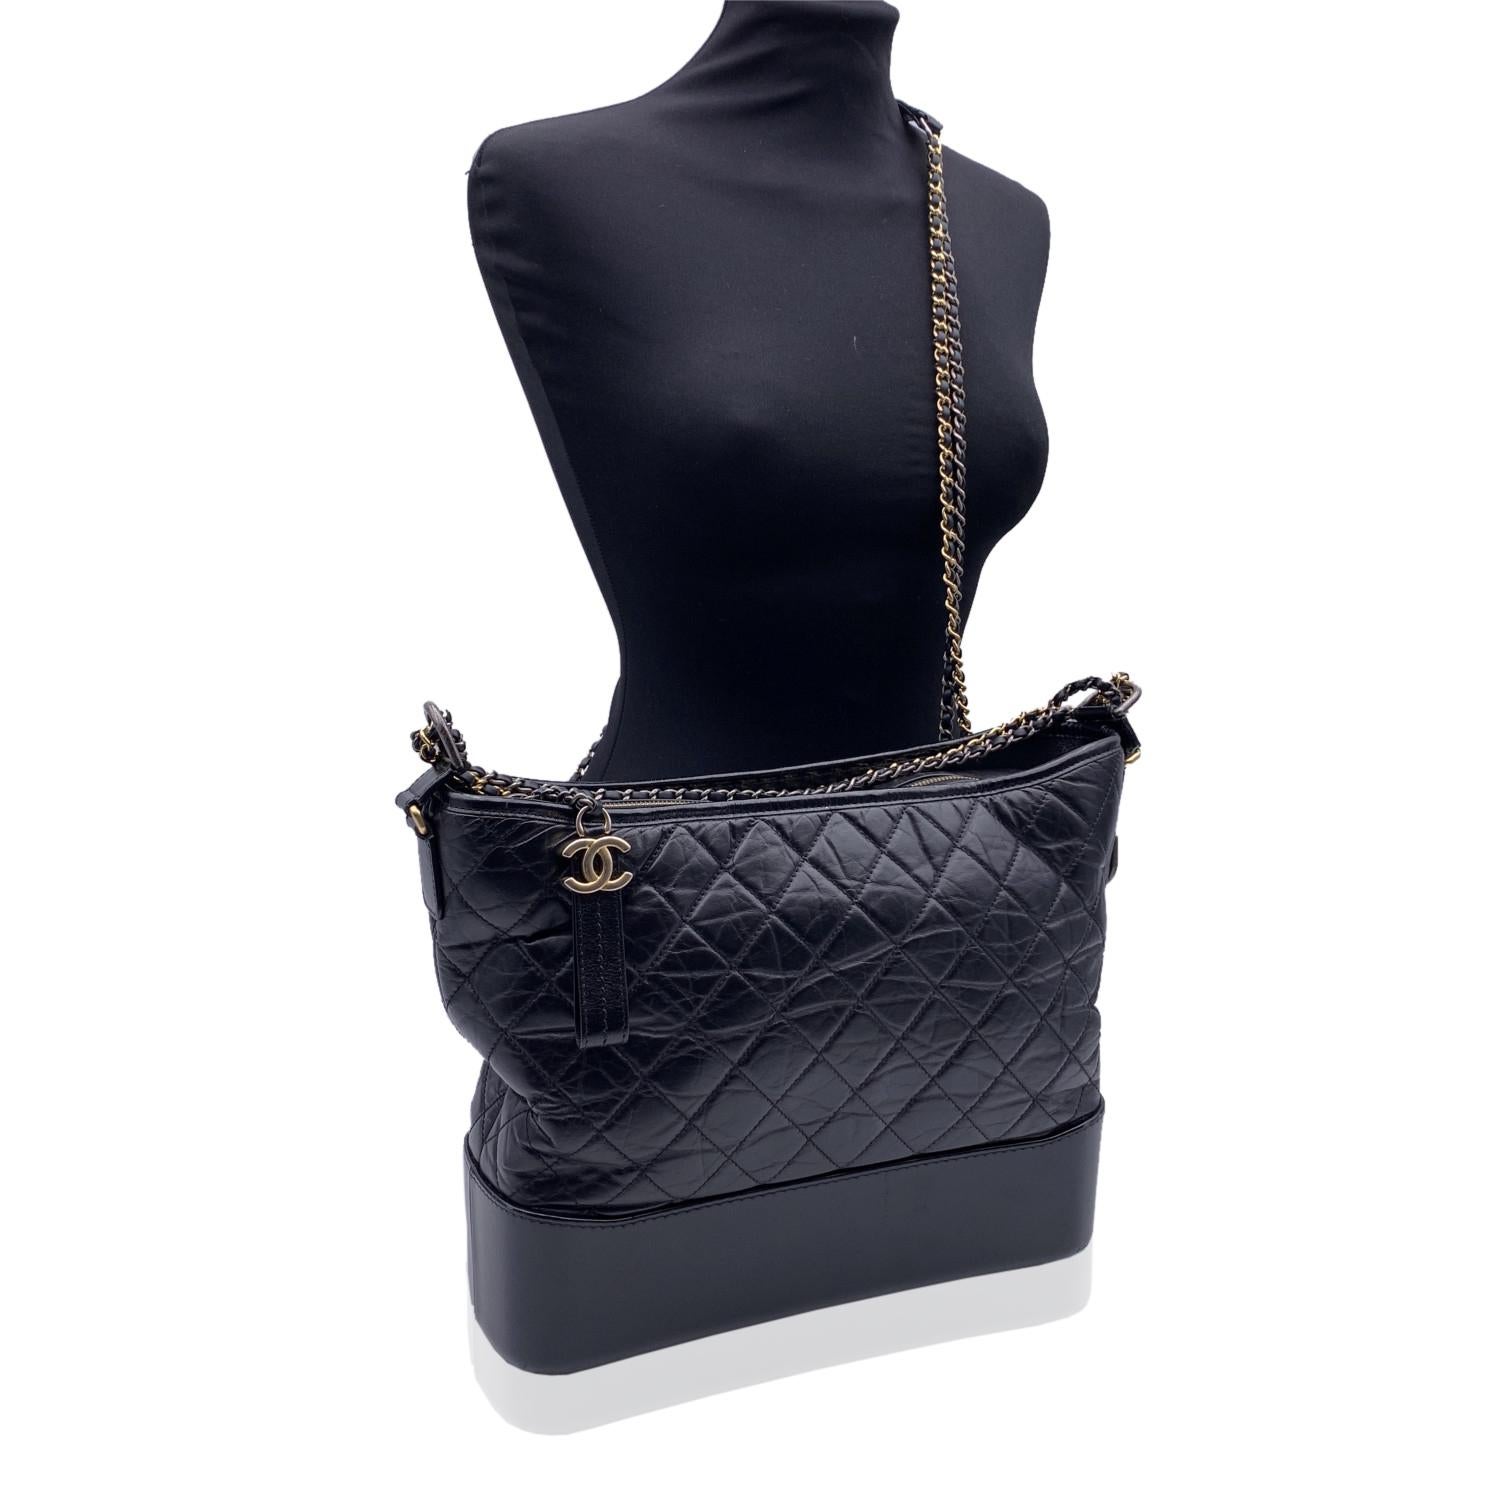 Chanel Gabrielle Large Hobo Bag aus schwarzem, gestepptem Leder. Zeitraum/Epoche: 2017. Die Tasche ist inspiriert von alten Fernglastaschen, die Männer auf der Rennbahn tragen. Unisex-Modell. Sie ist aus schwarzem Leder gefertigt und verfügt über